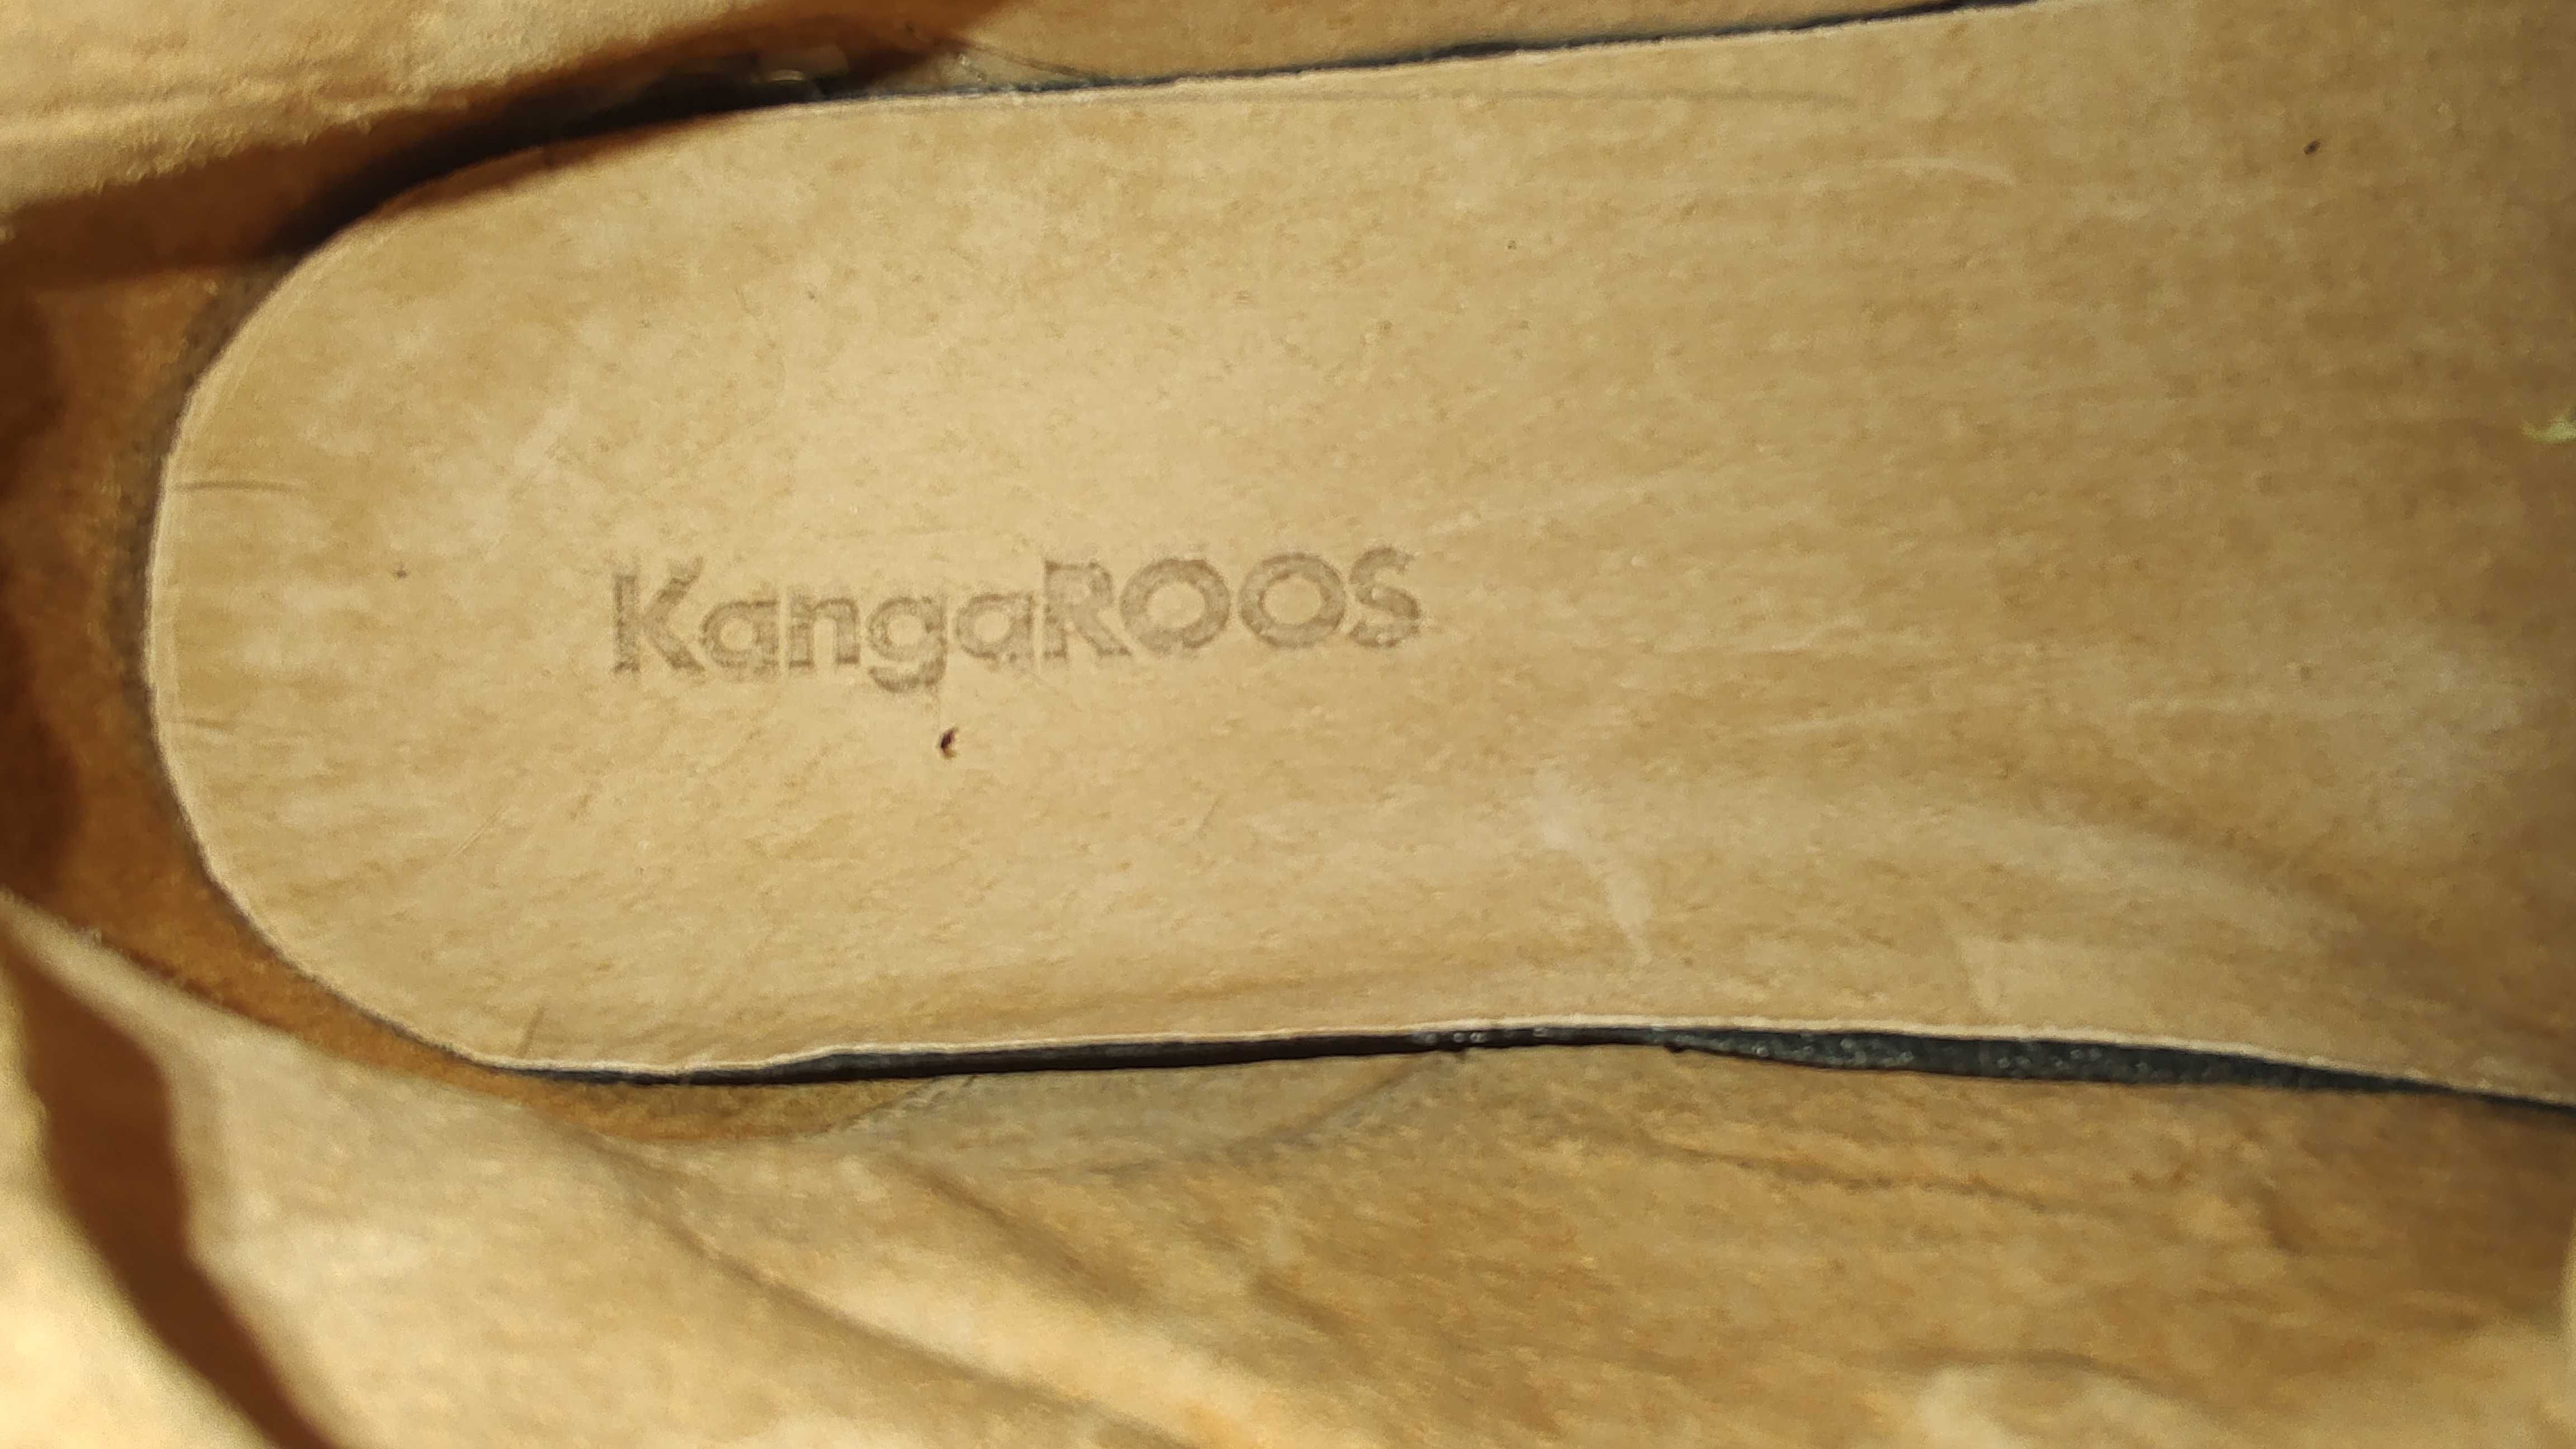 Ботинки Kangaroos 45 размер, кожа, производство США, новые